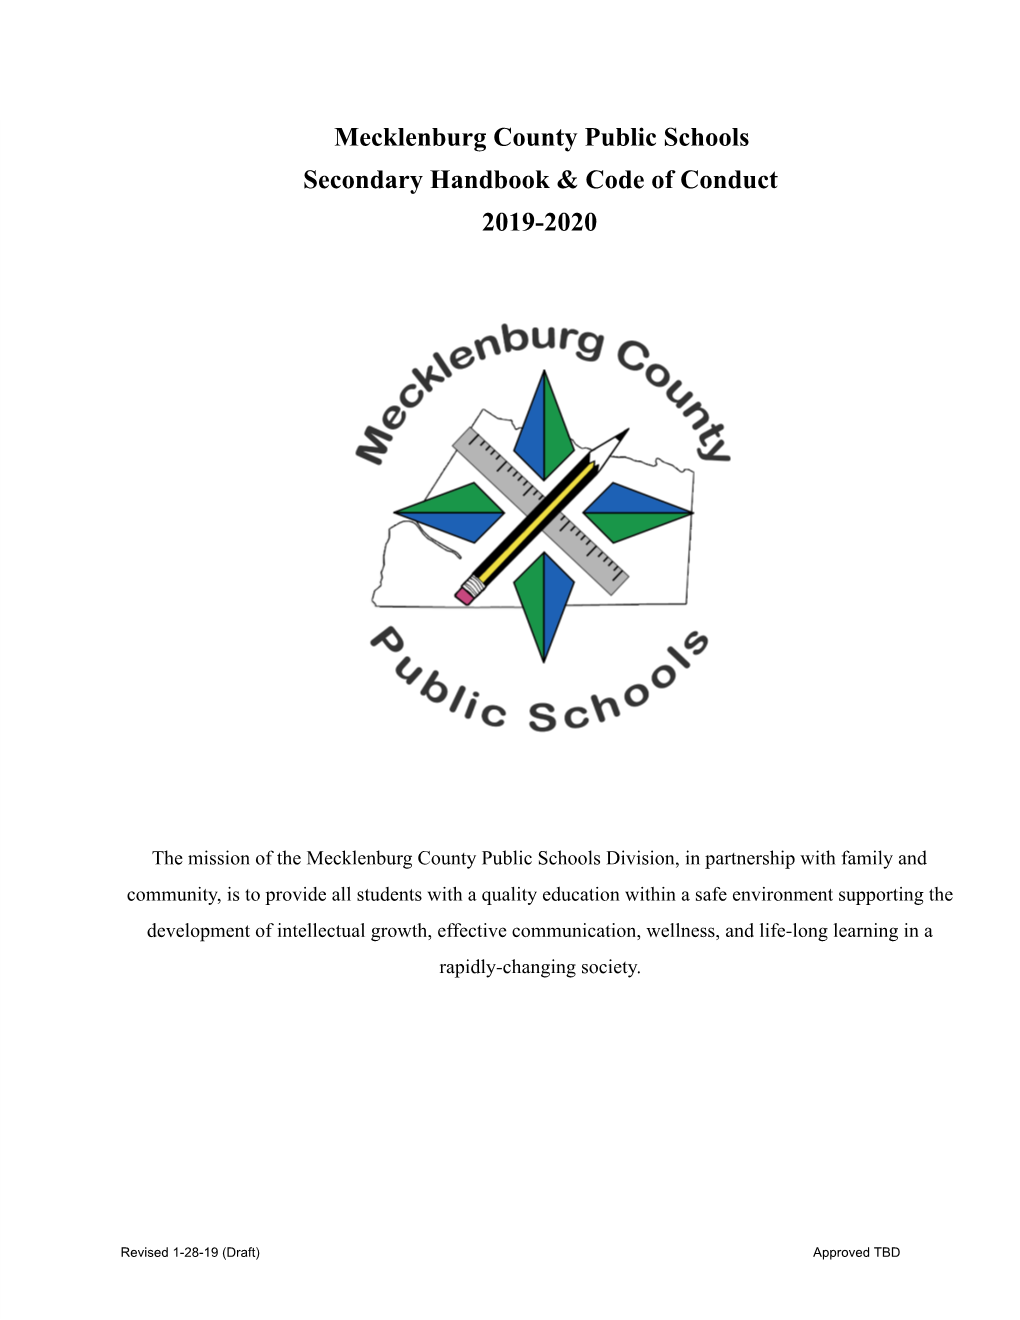 Mecklenburg County Public Schools Secondary Handbook & Code Of